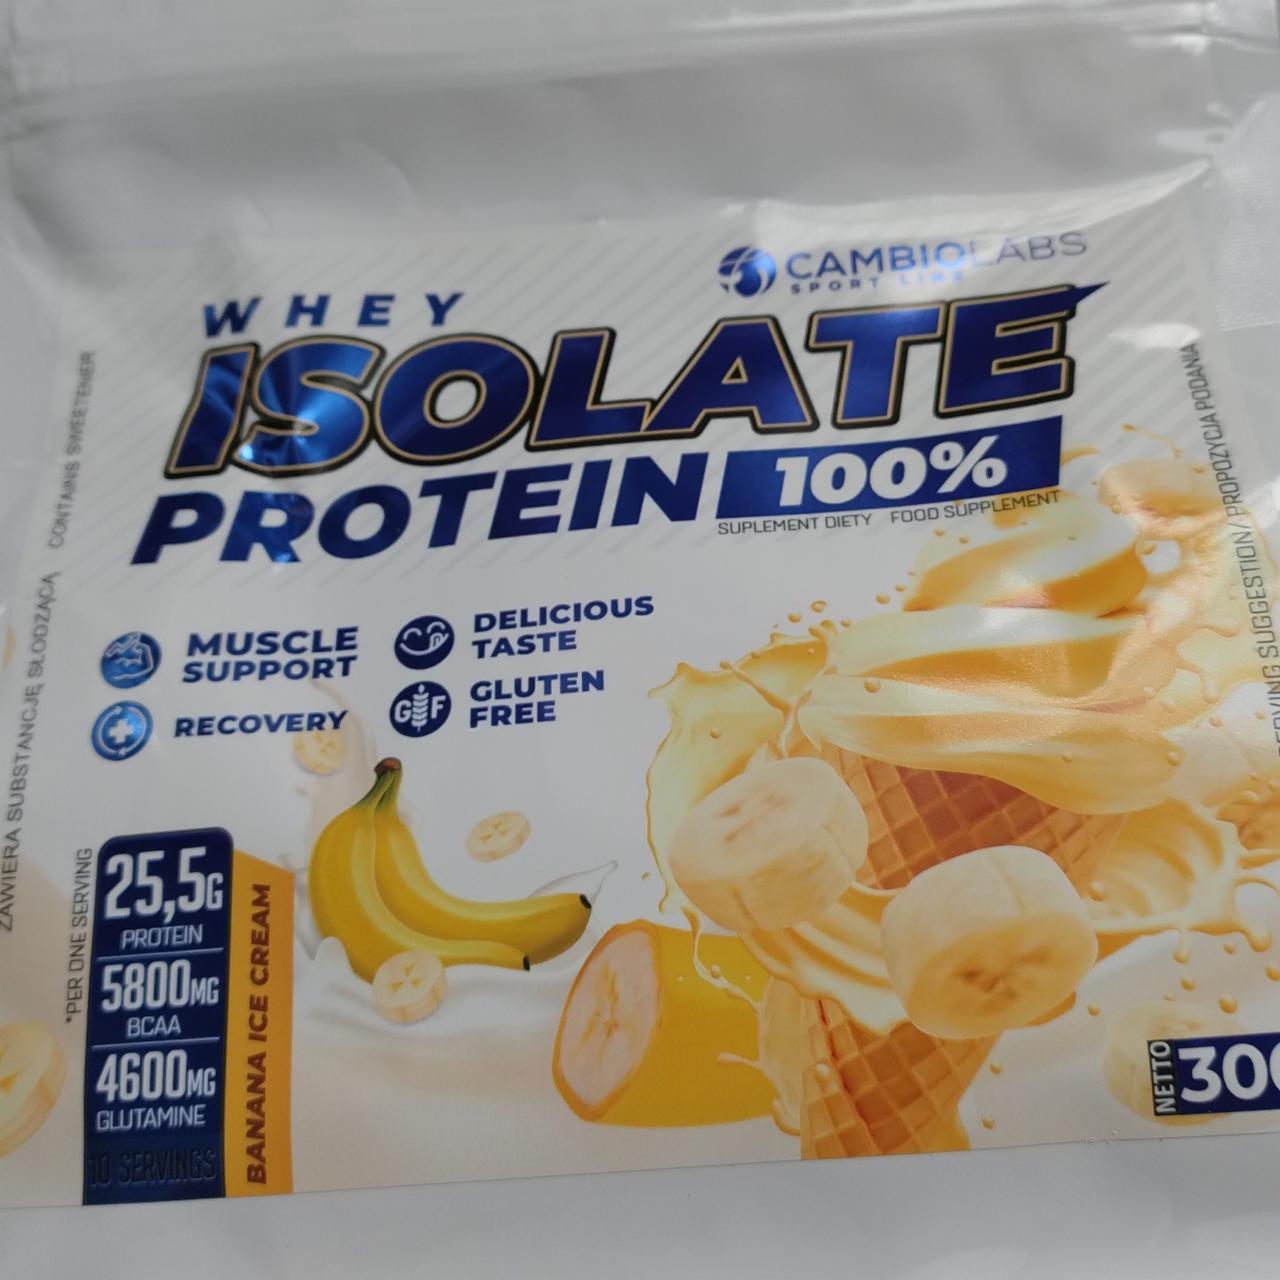 Zdjęcia - Whey isolate protein banana ice cream CambioLabs